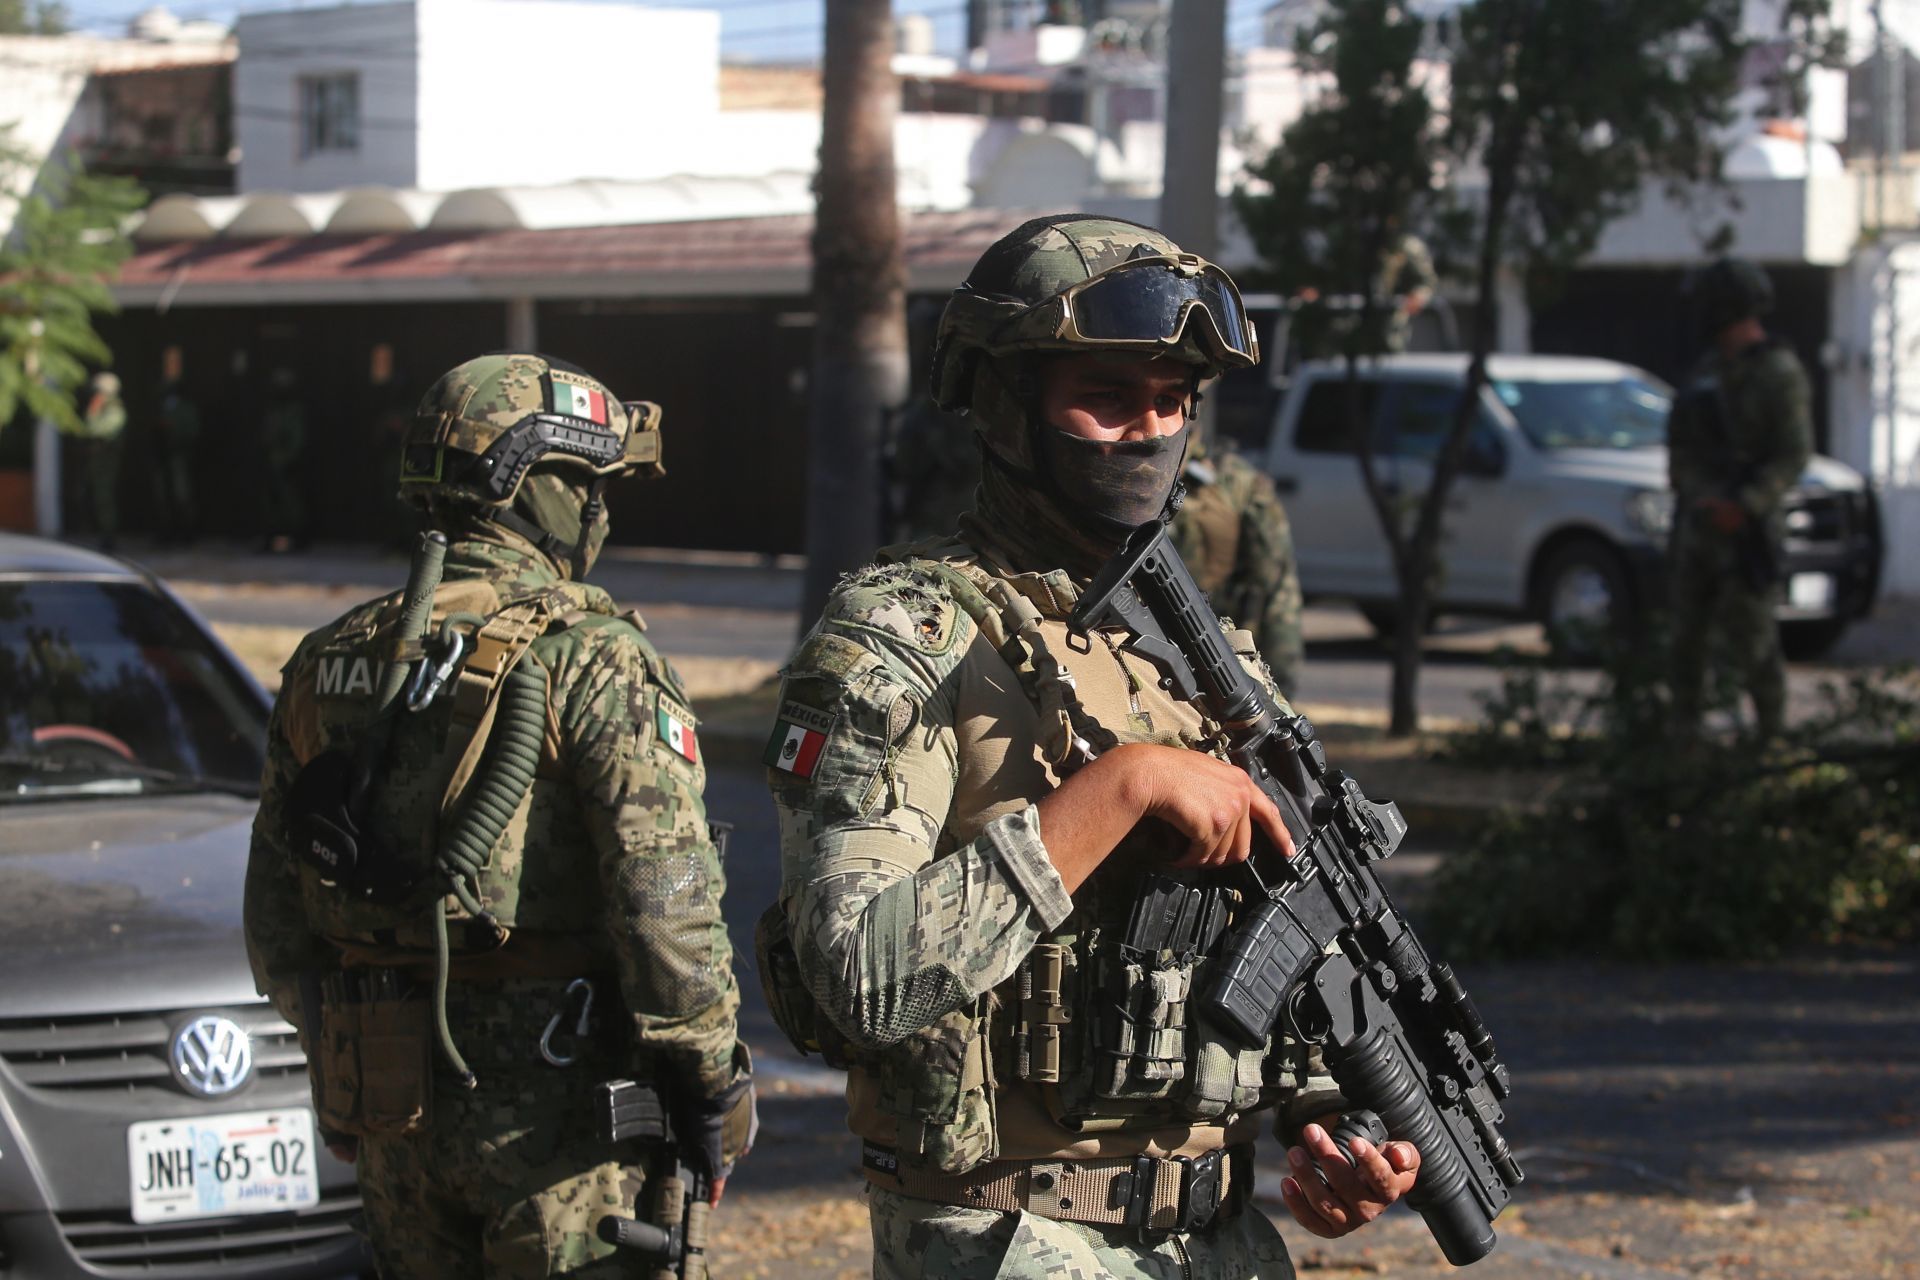 Balacera entre grupos criminales en Teocaltiche, Jalisco